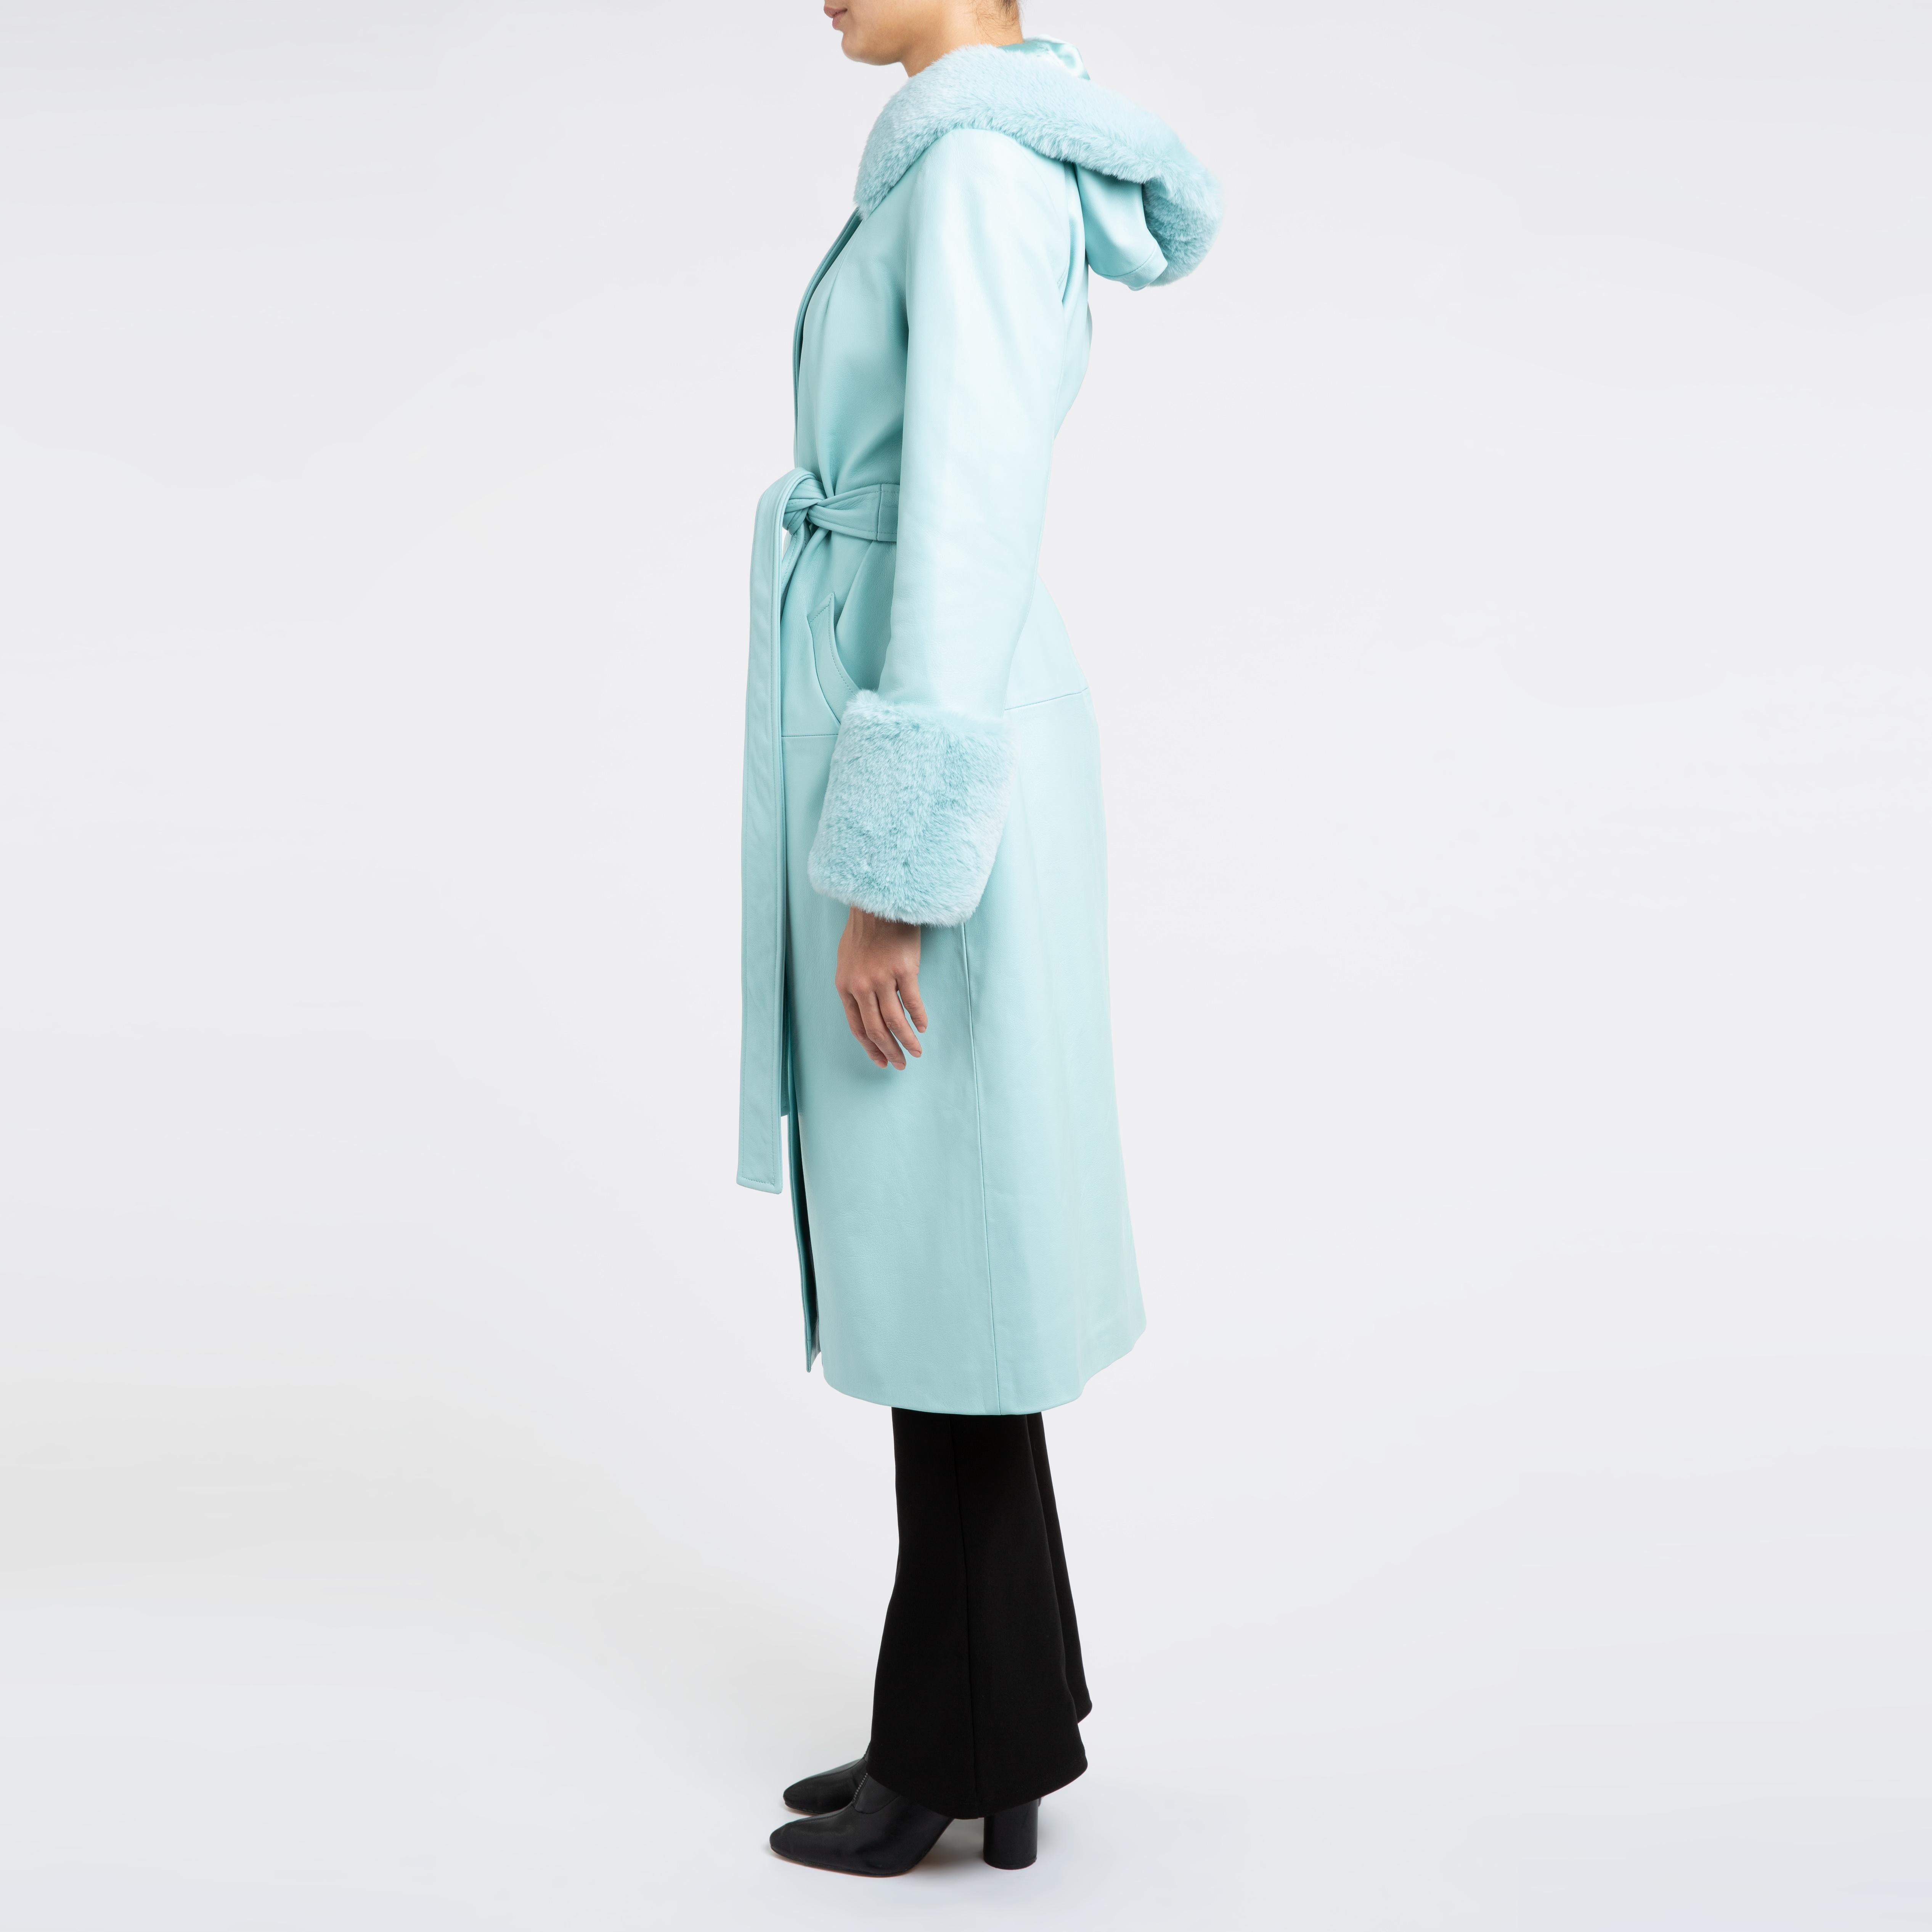 Women's Verheyen London Hooded Leather Coat in Blue Aquamarine & Faux Fur - Size uk 14